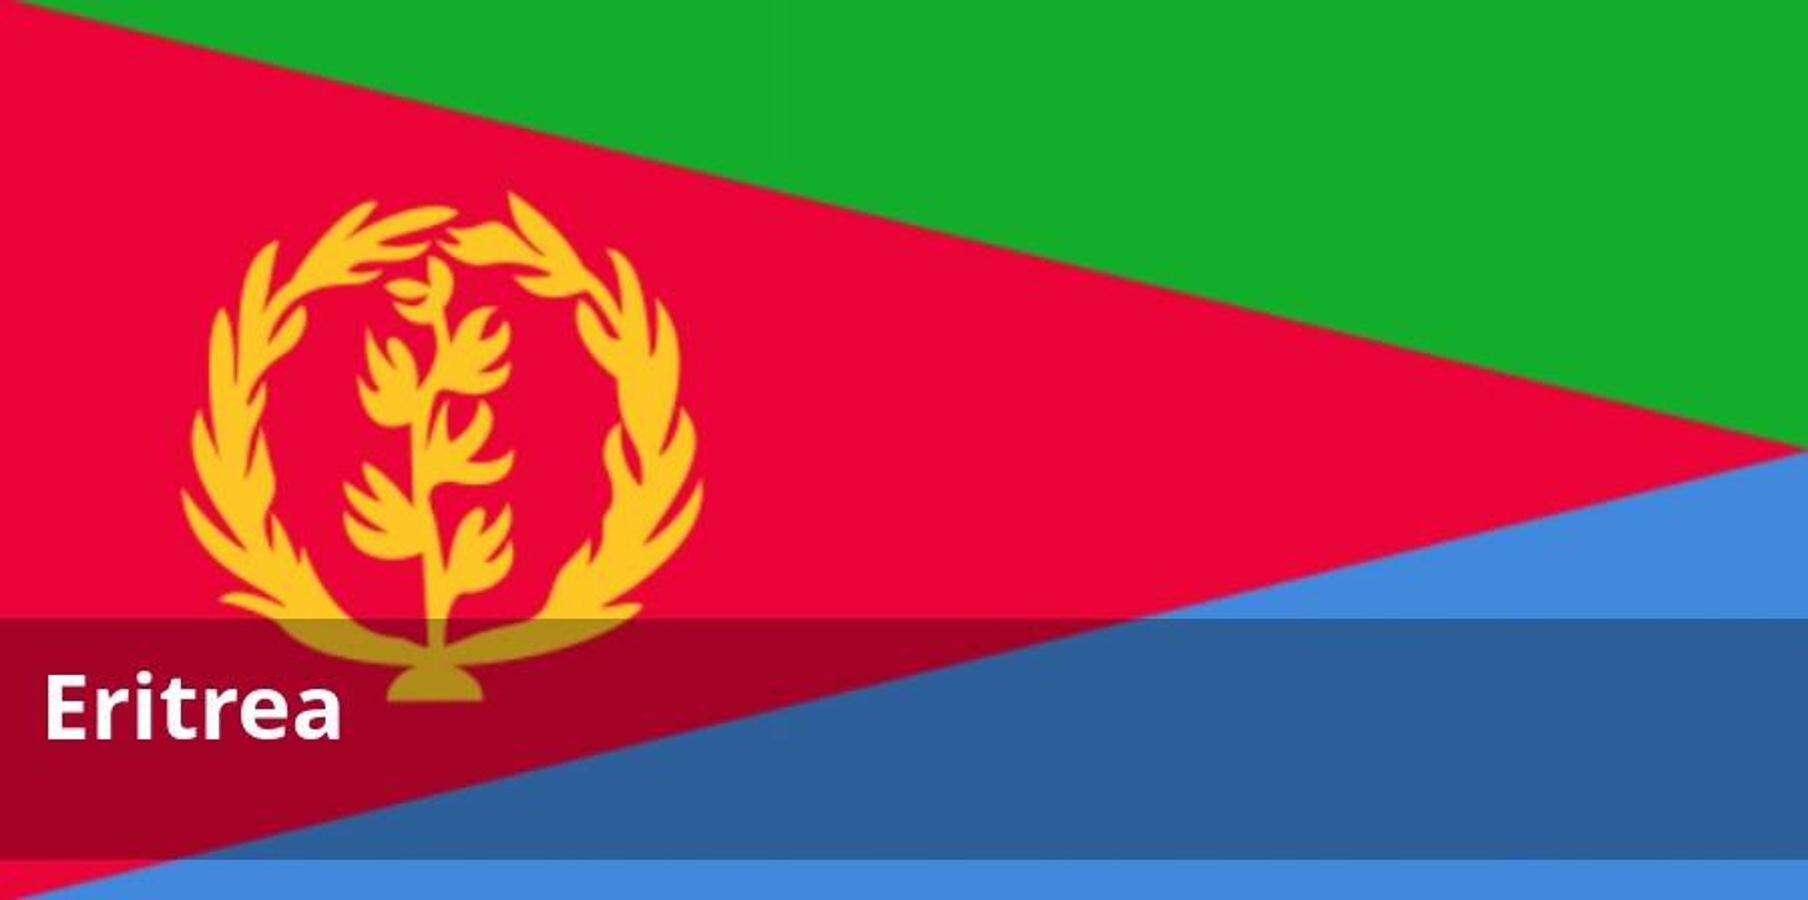 Se desaconseja el viaje bajo cualquier circunstancia. Las muy tensas relaciones de Eritrea con Etiopía suponen un riesgo potencial. En los últimos años, se han producido episodios de violencia militar en territorio eritreo de origen no aclarado y la frontera común permanece cerrada.